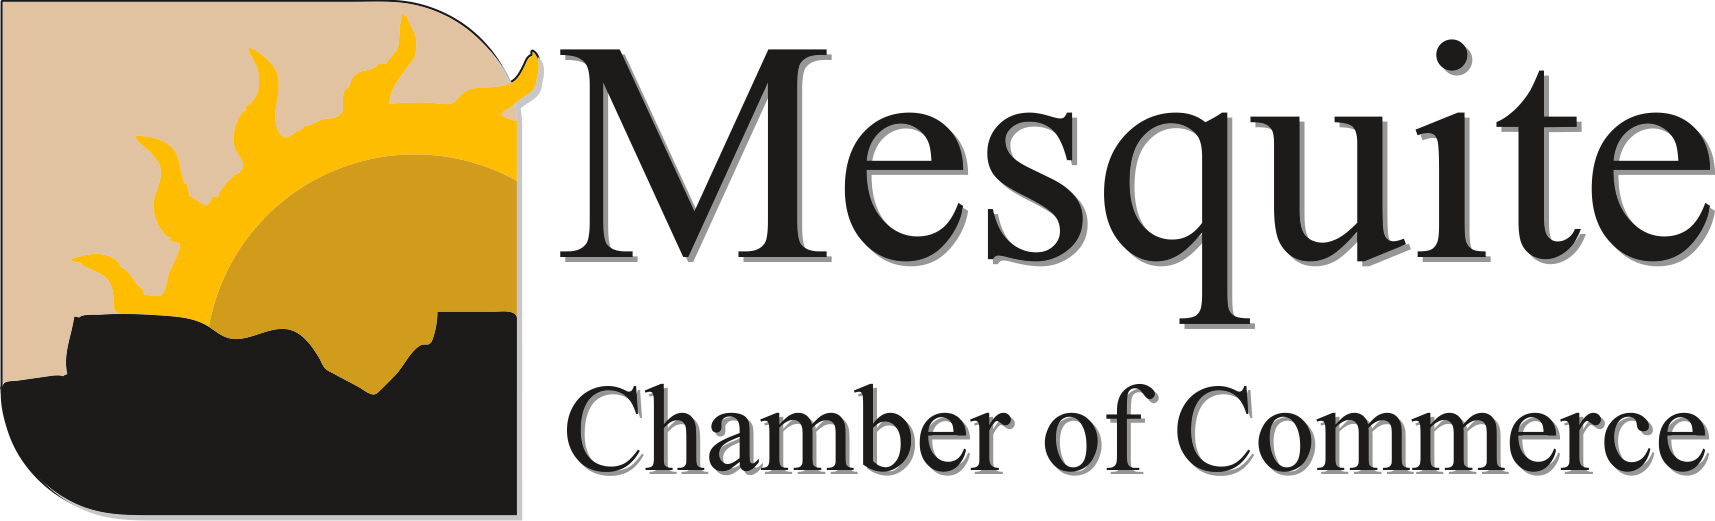 Mesquite Chamber of Commerce logo